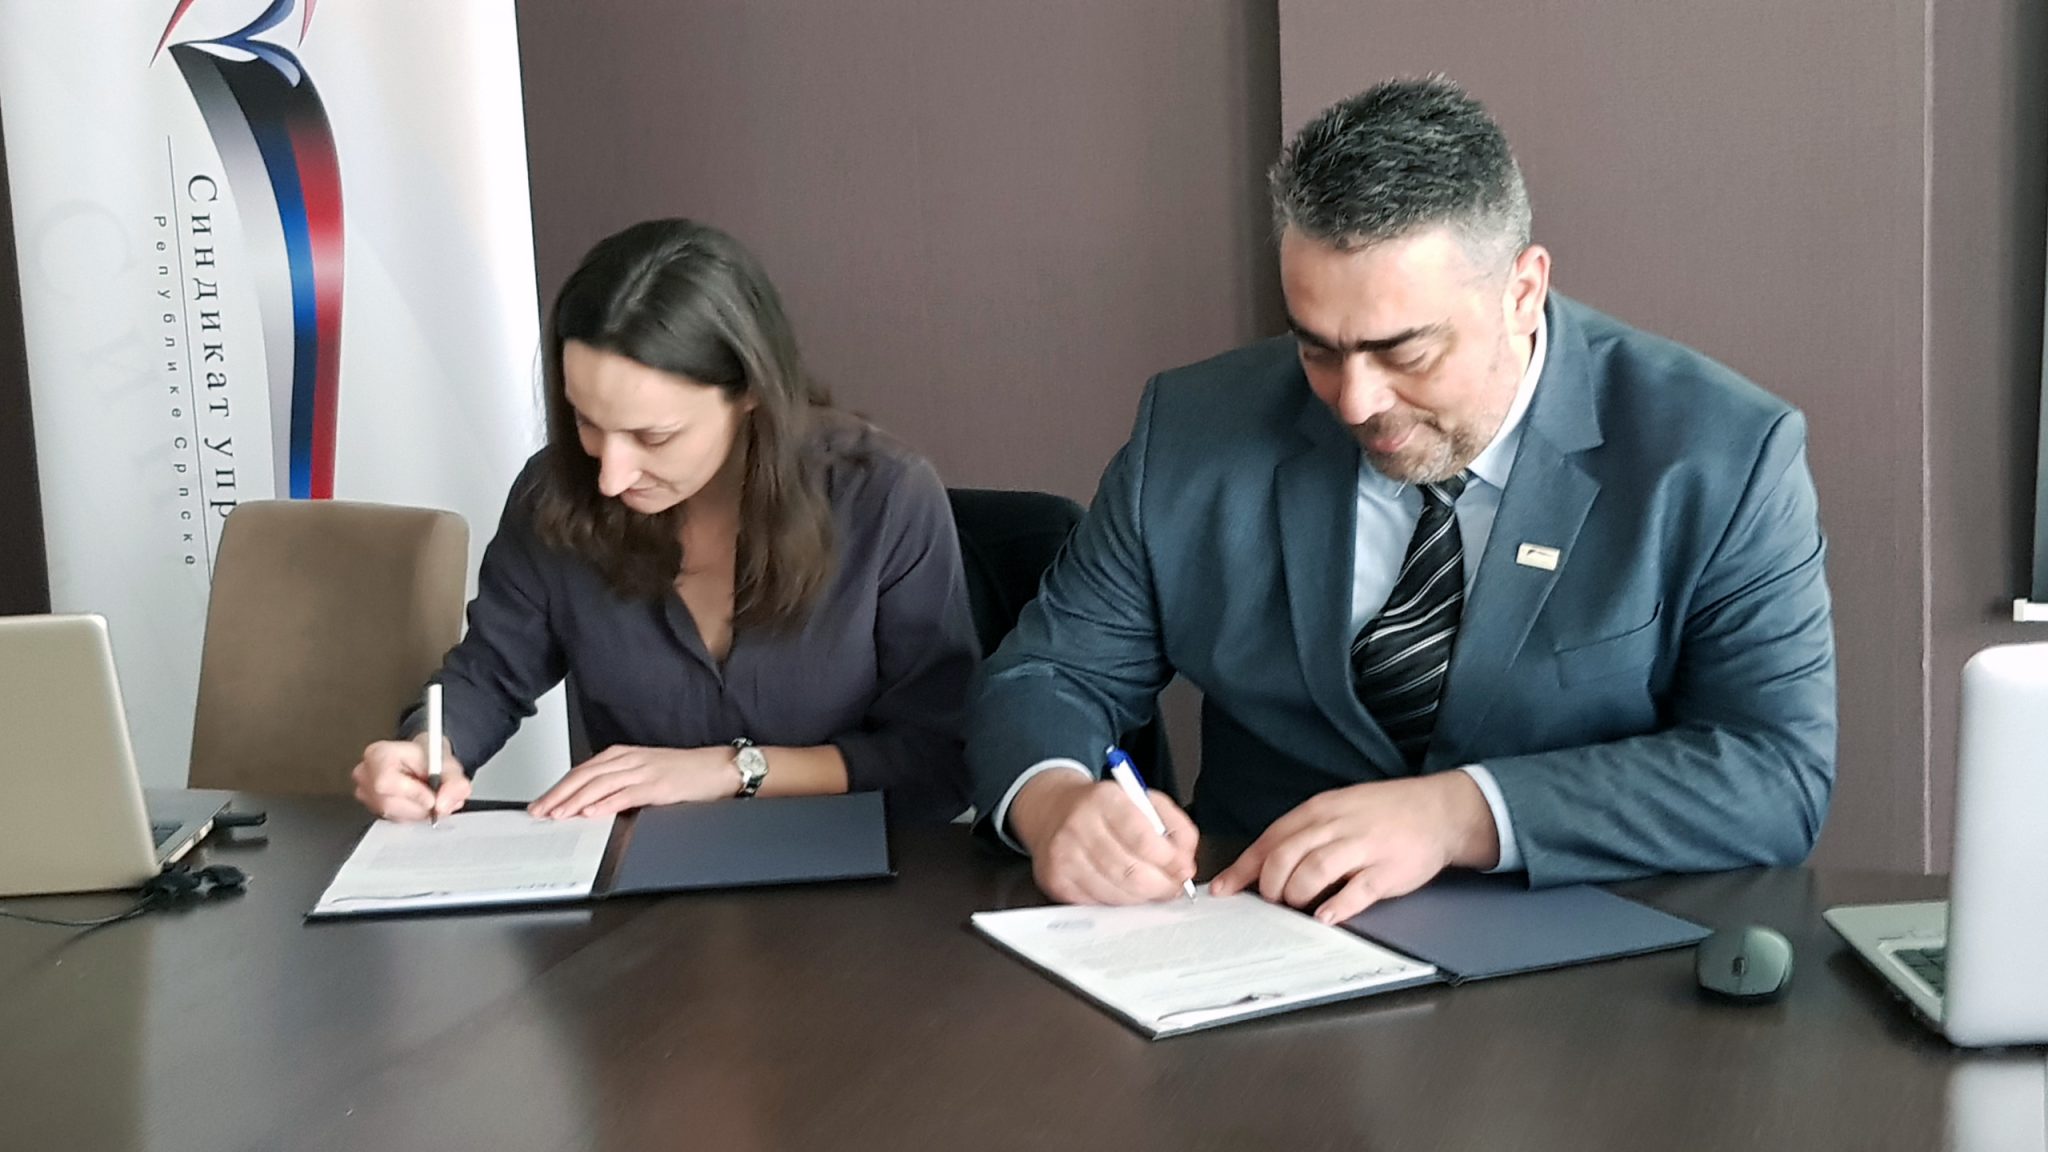 Sindikat uprave Republike Srpske sa EPF-om potpisao Memorandum o razumijevanju i saradnji